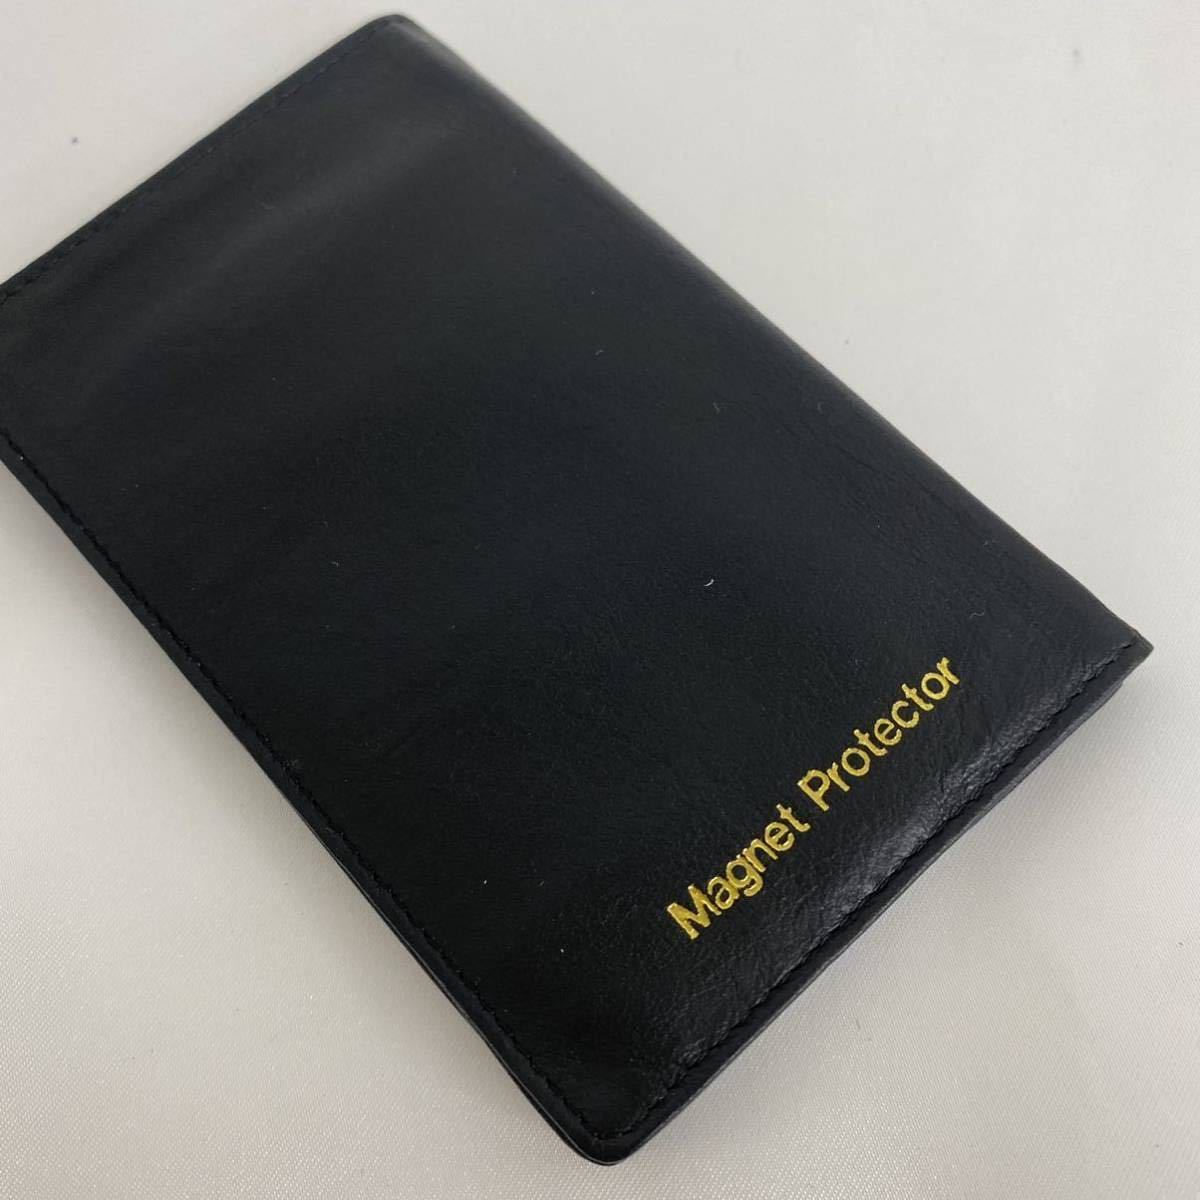 【未使用品】磁気カード保管ケース マグネットプロテクター カードケース 希少 ブラック レディース メンズ MAGNET PROTECTOR 大同特殊鋼